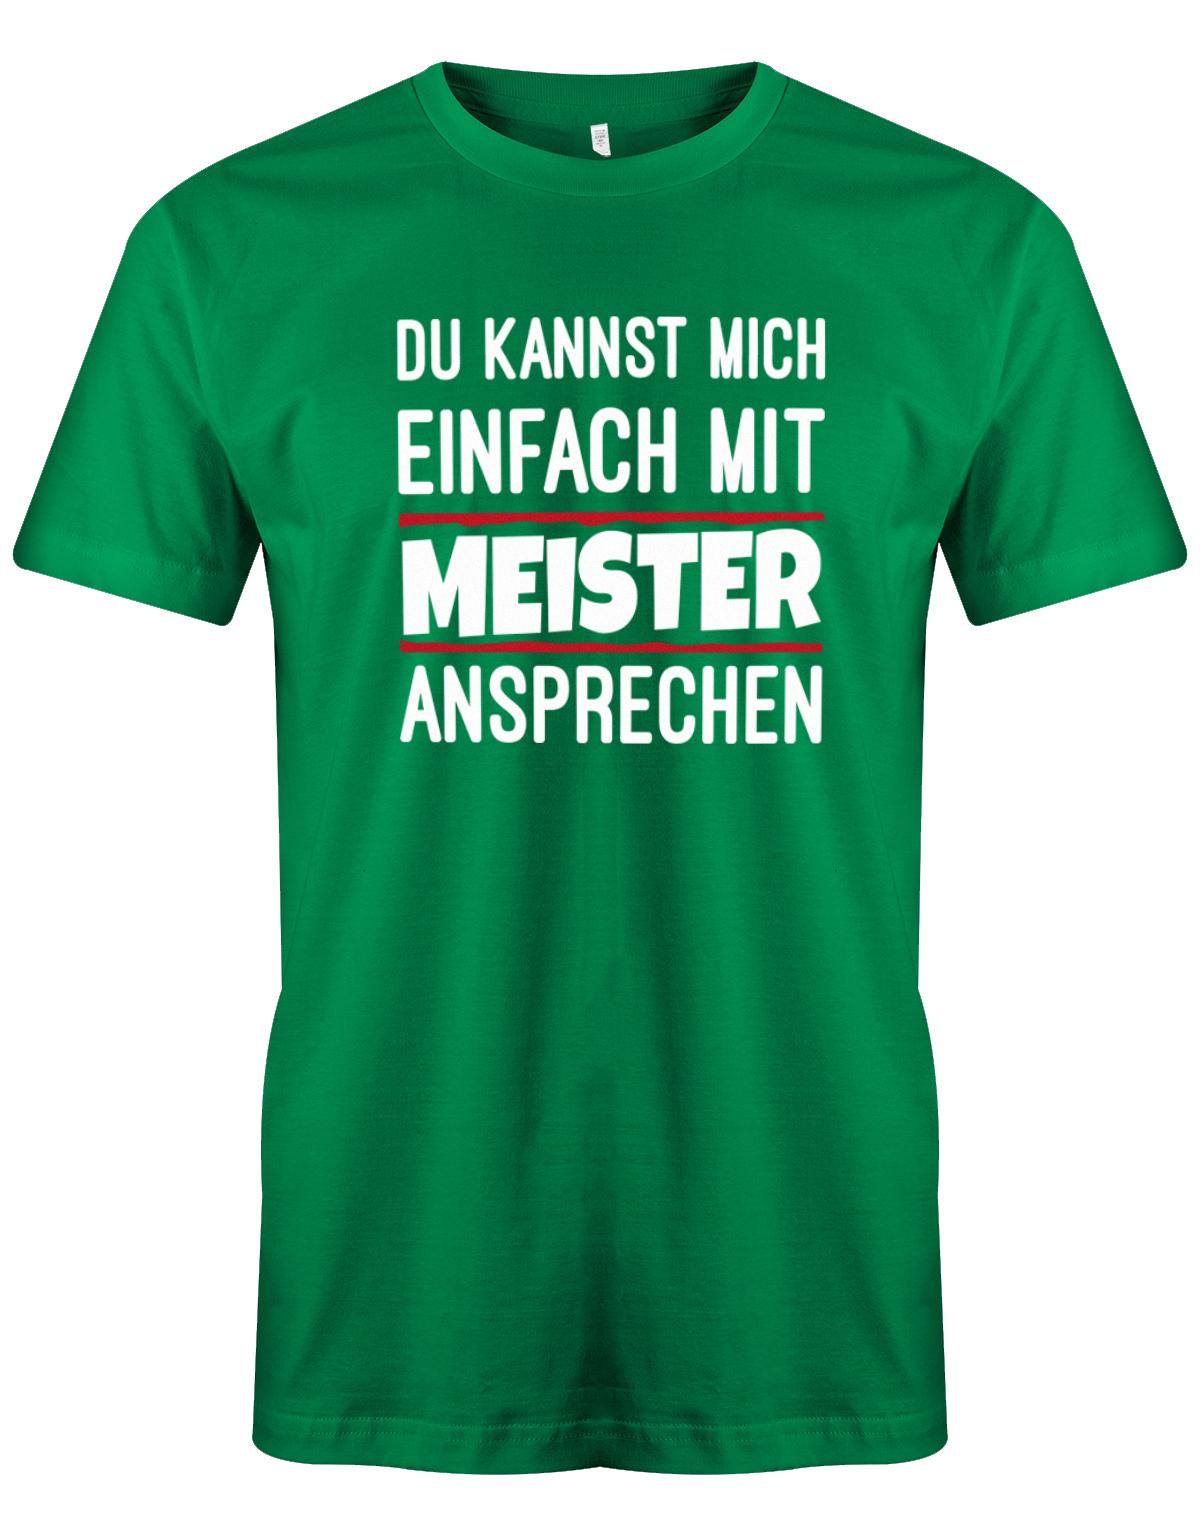 Du kannst mich einfach mit Meister ansprechen - Herren T-Shirt myShirtStore Grün